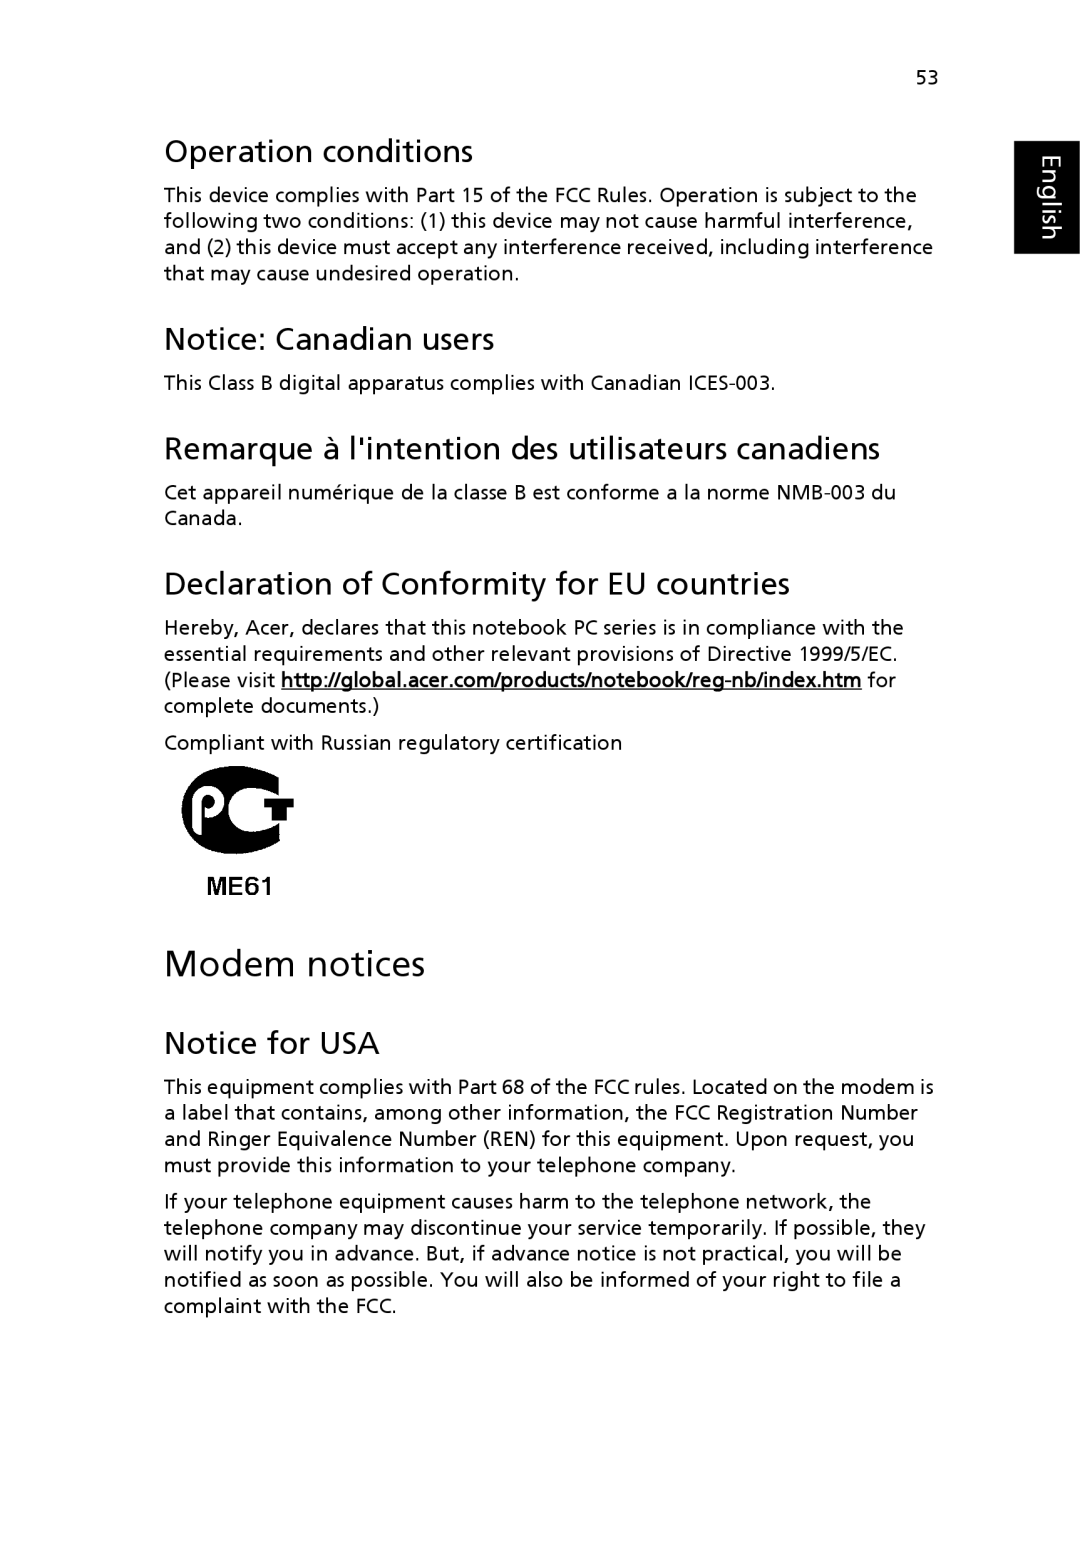 Acer 3610 Series manual Modem notices, Operation conditions, Remarque à lintention des utilisateurs canadiens 